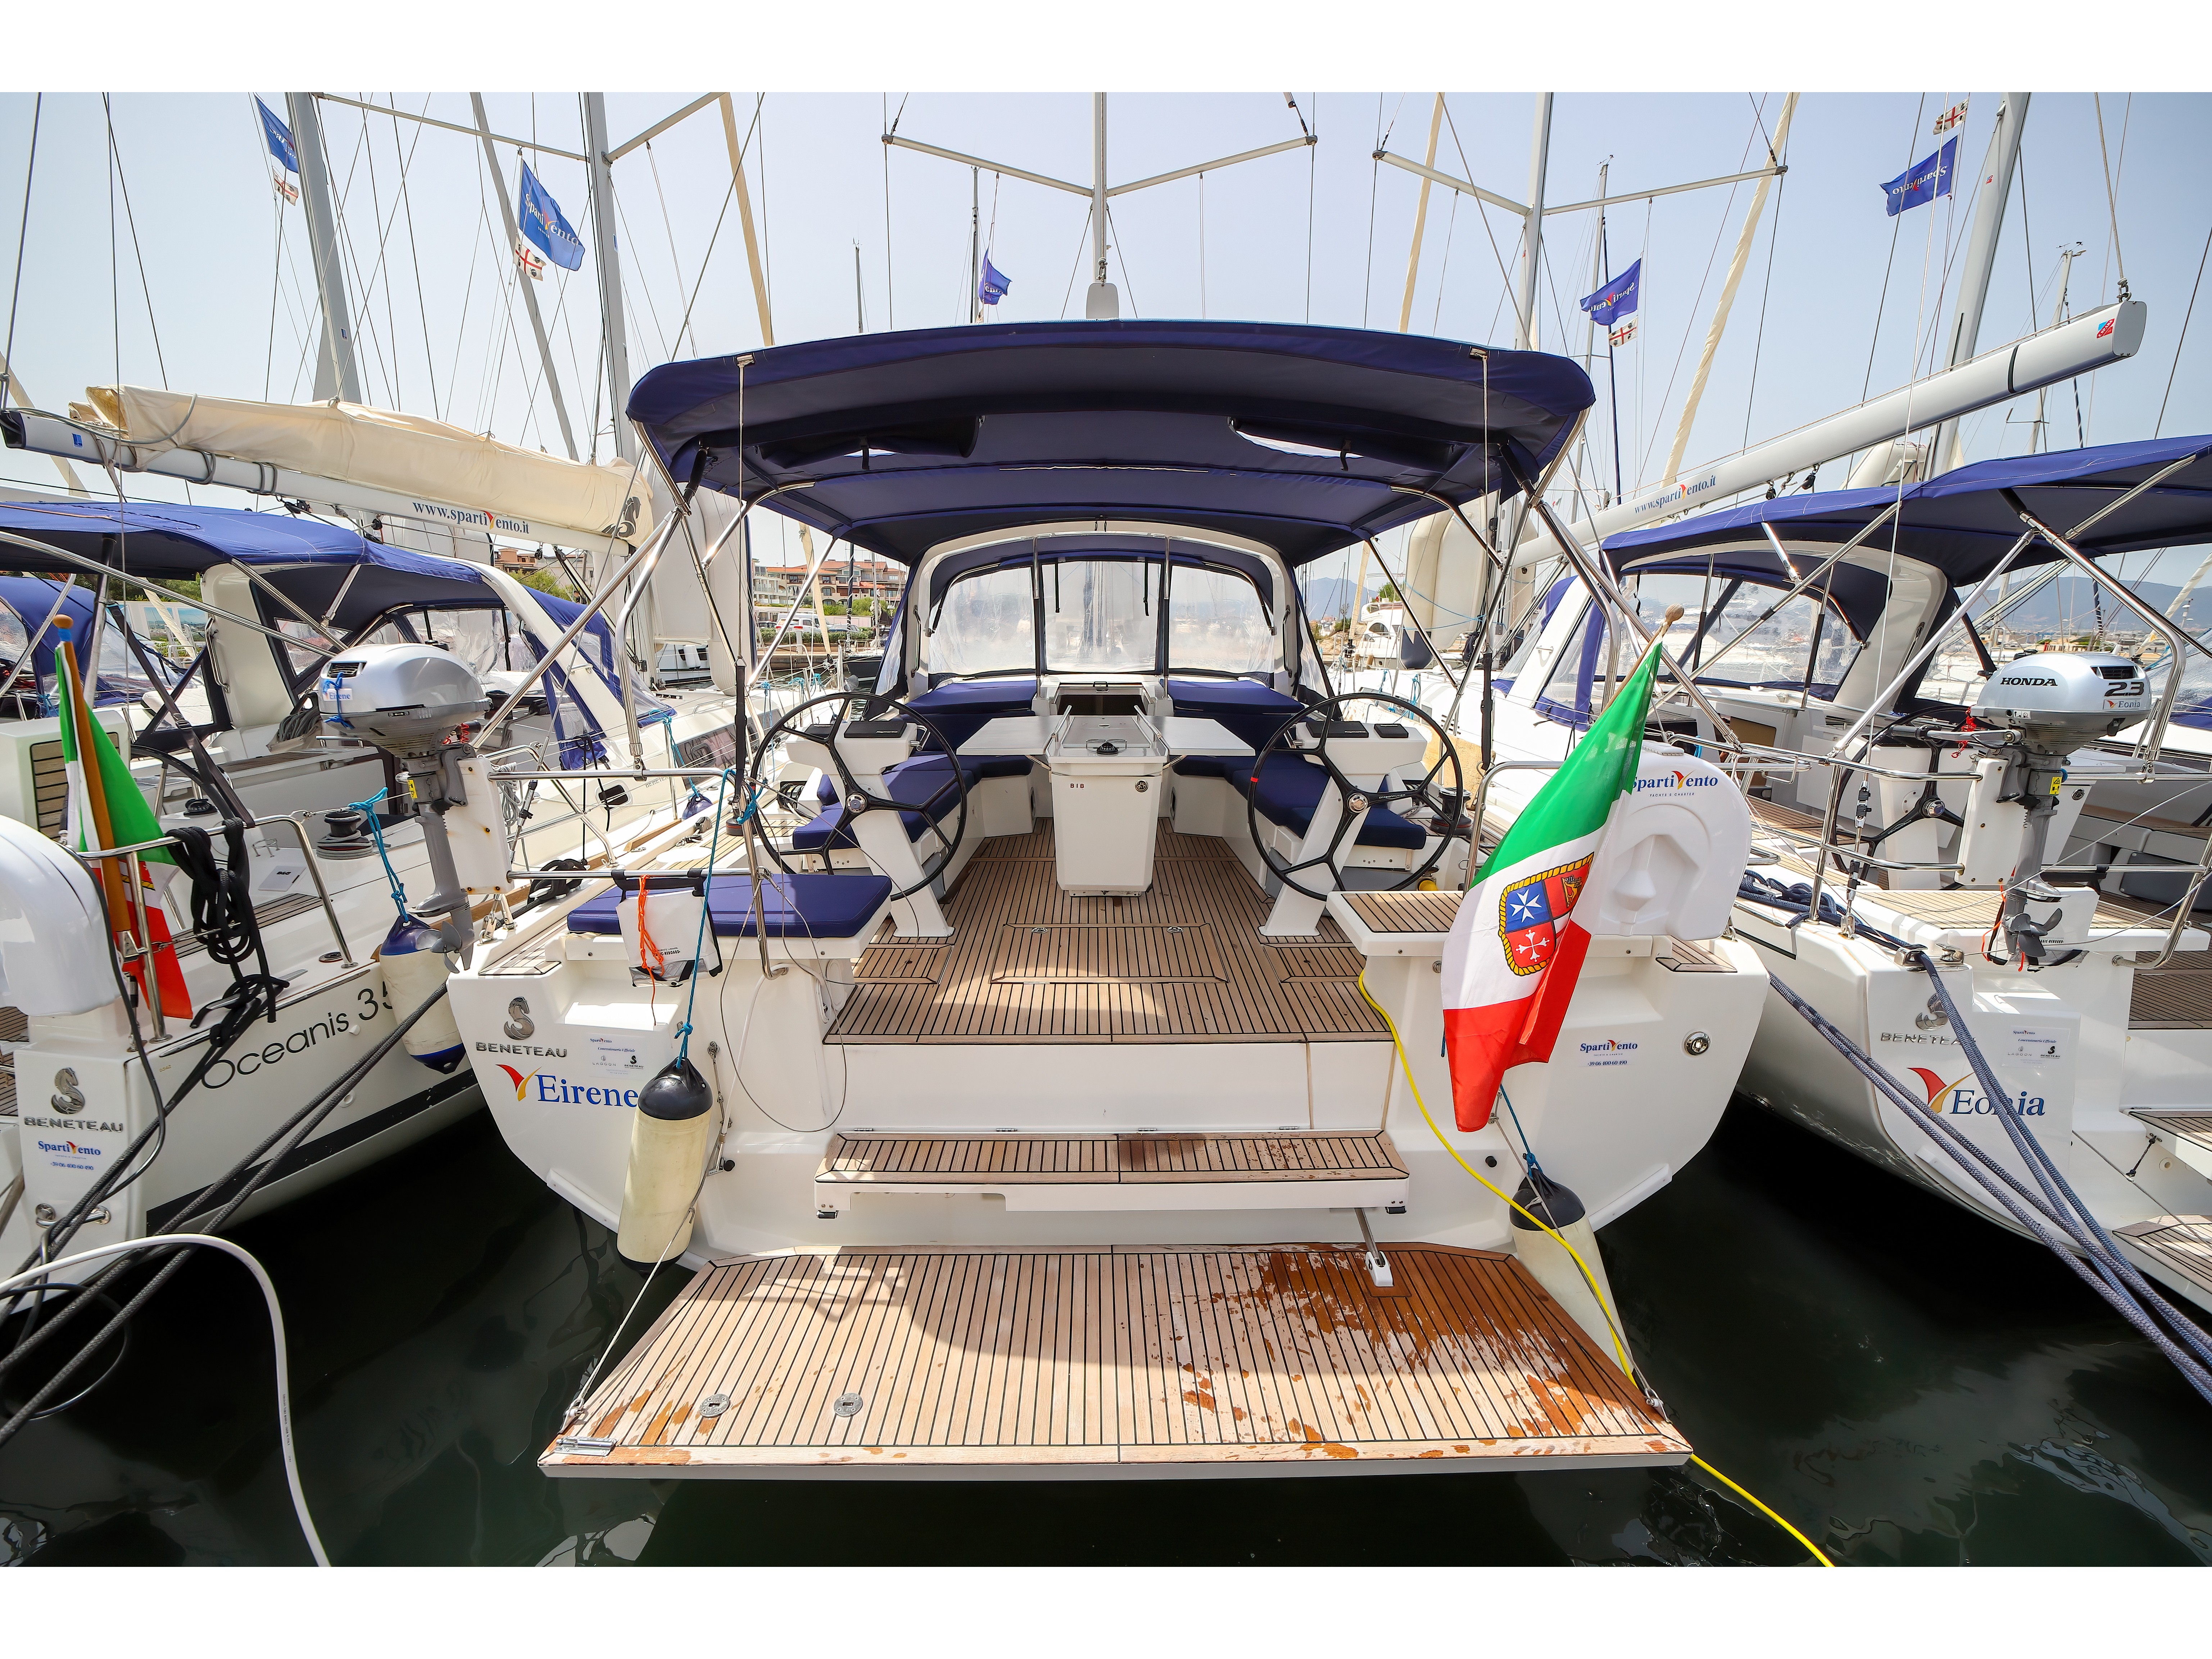 Oceanis 46.1 - Yacht Charter Olbia & Boat hire in Italy Sardinia Costa Smeralda Olbia Marina di Olbia 2